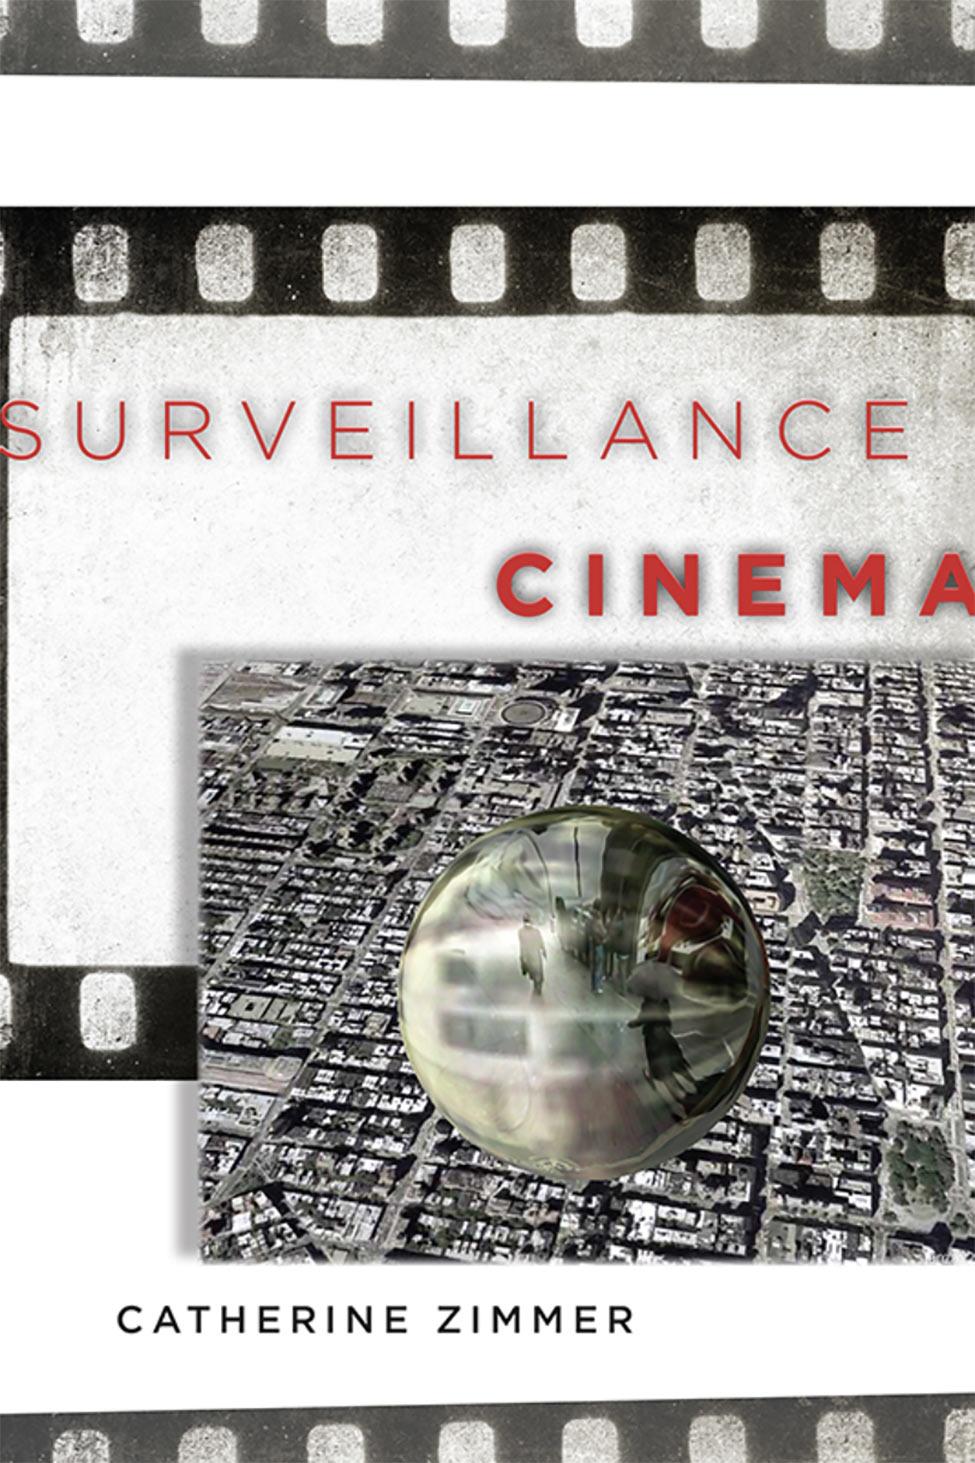 Surveillance Cinema by Catherine Zimmer